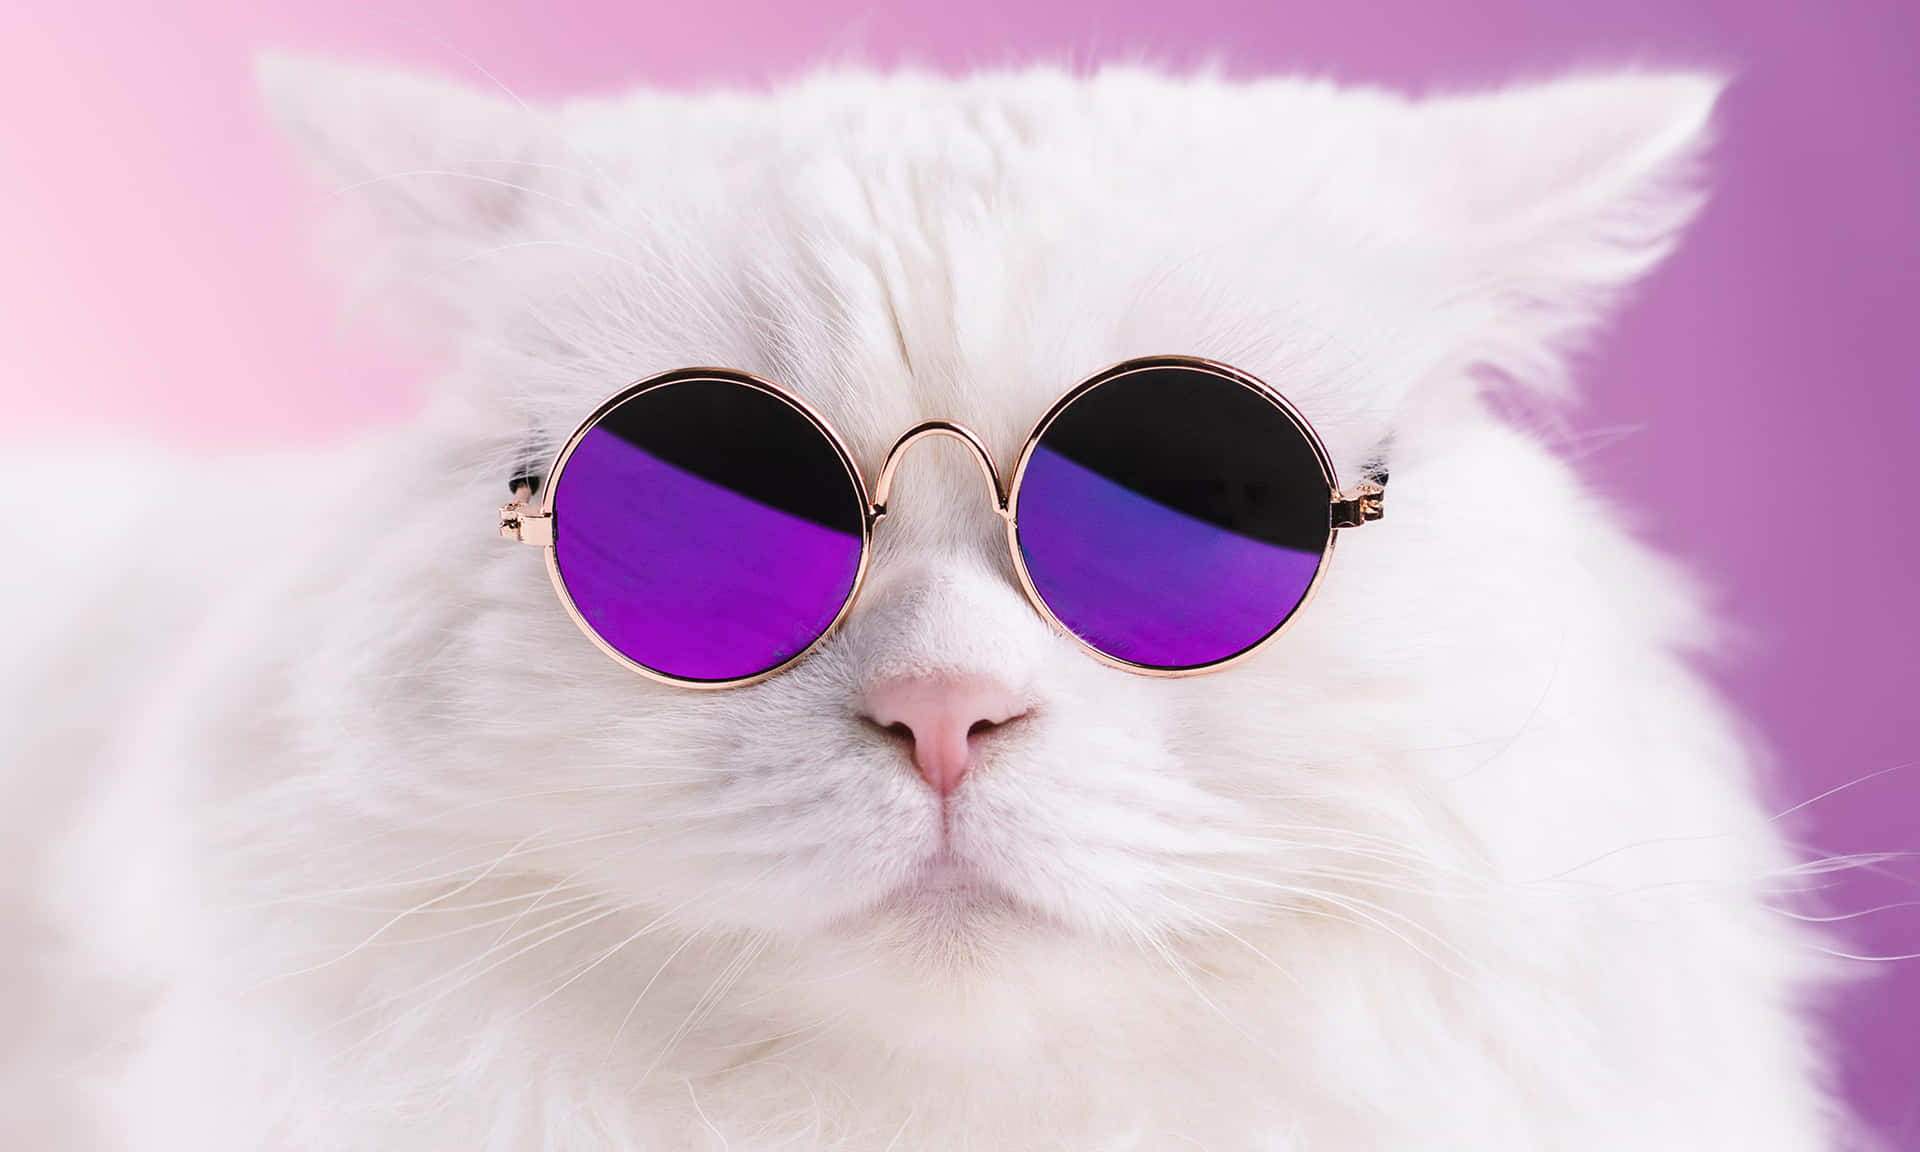 Memesengraçados De Gatos: Foto De Um Gato Branco Usando Óculos De Sol Roxos.